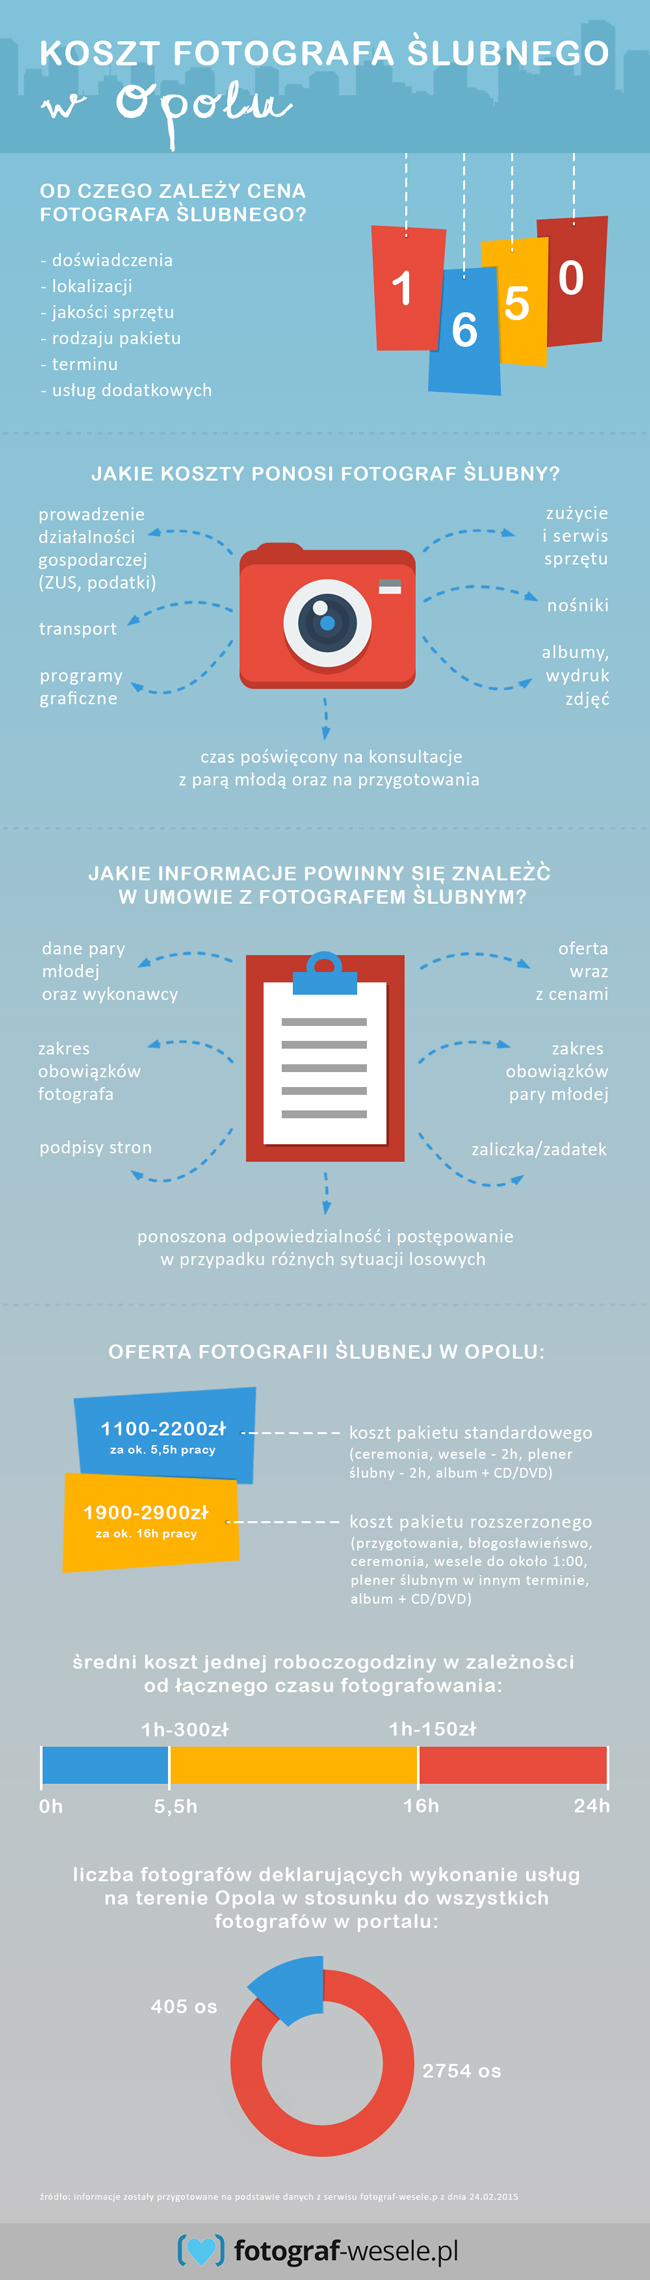 Opole - infografika o kosztach fotografii ślubnej